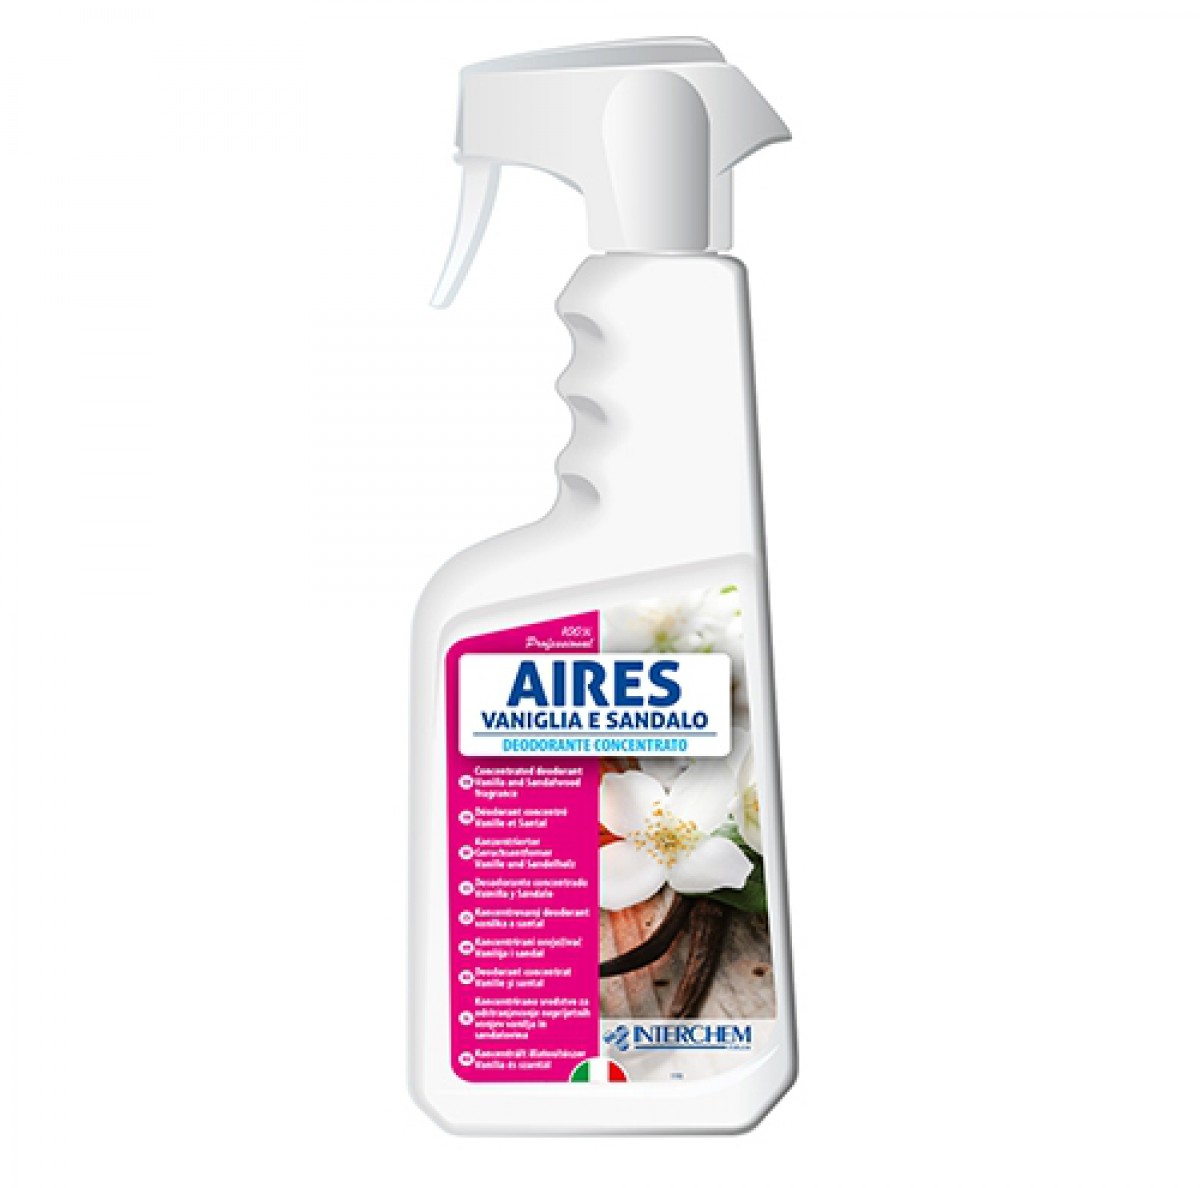 AIRES - 750ml / Super koncentrirani osvježivač za prostorije, površine i tkanine / Jak i dugotrajan miris / Ne sadrži tvari za bojanje/ Mirisi: vanilija i sandal, morska svježina, proljetne vočke, mimoza